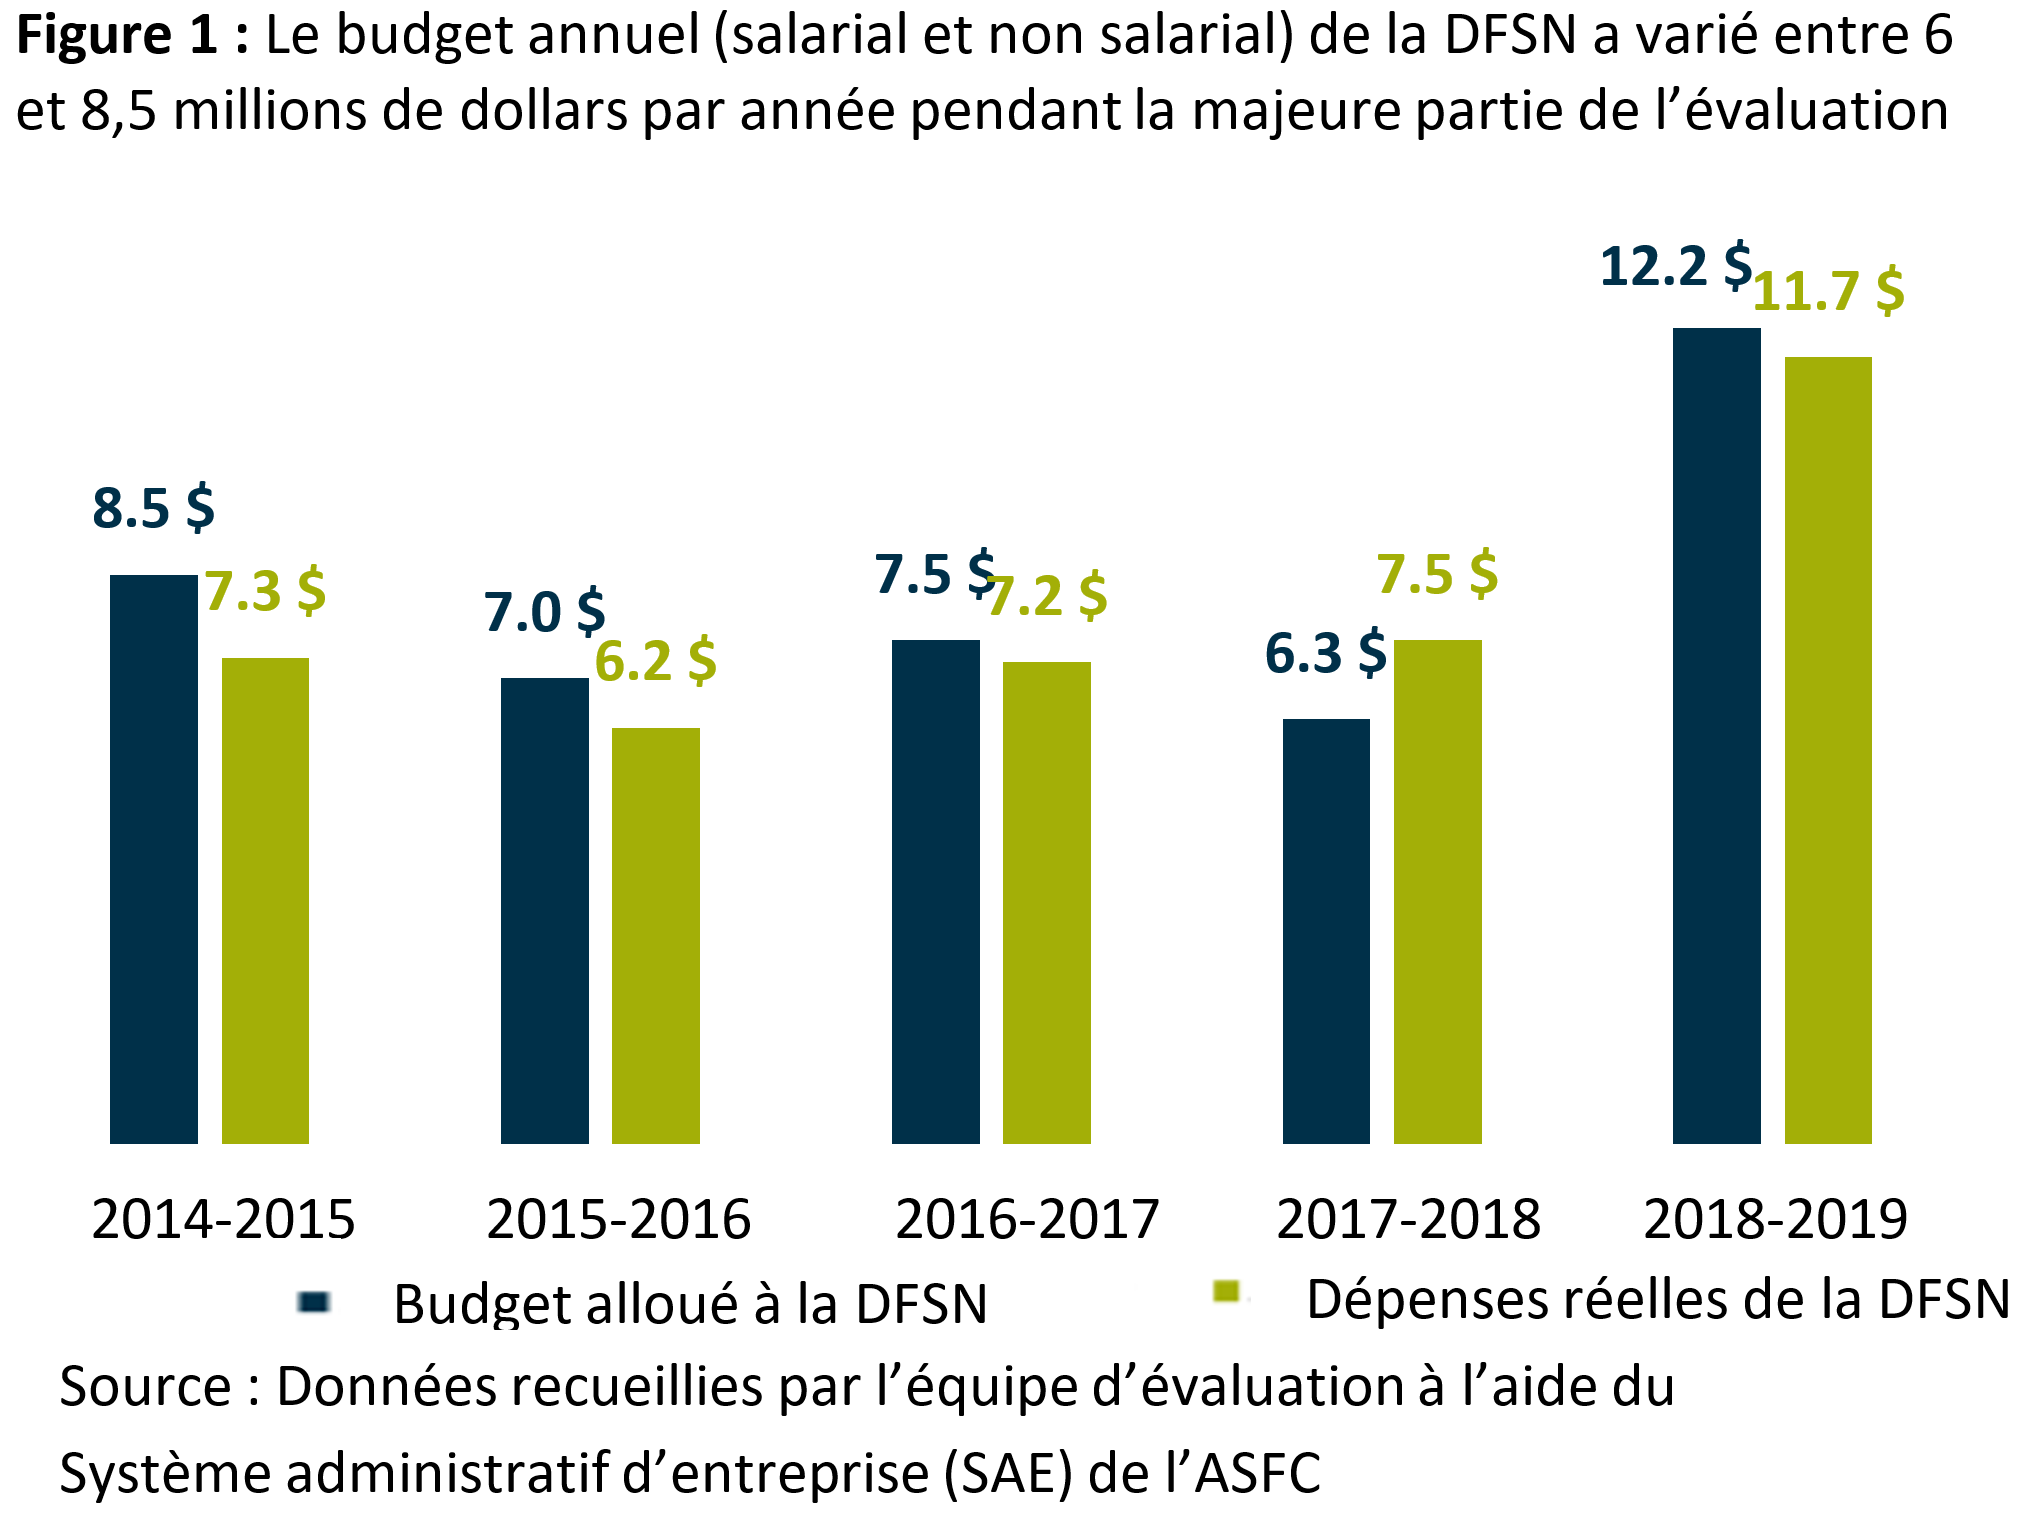 La figure 1 montre le budget annuel (salarial et non salarial) de la <abbr>DFSN</abbr> tout au long de la période d’évaluation, qui se situait entre 6 millions de dollars et 8,5 millions de dollars par année, à l’exception de 2018 à 2019.